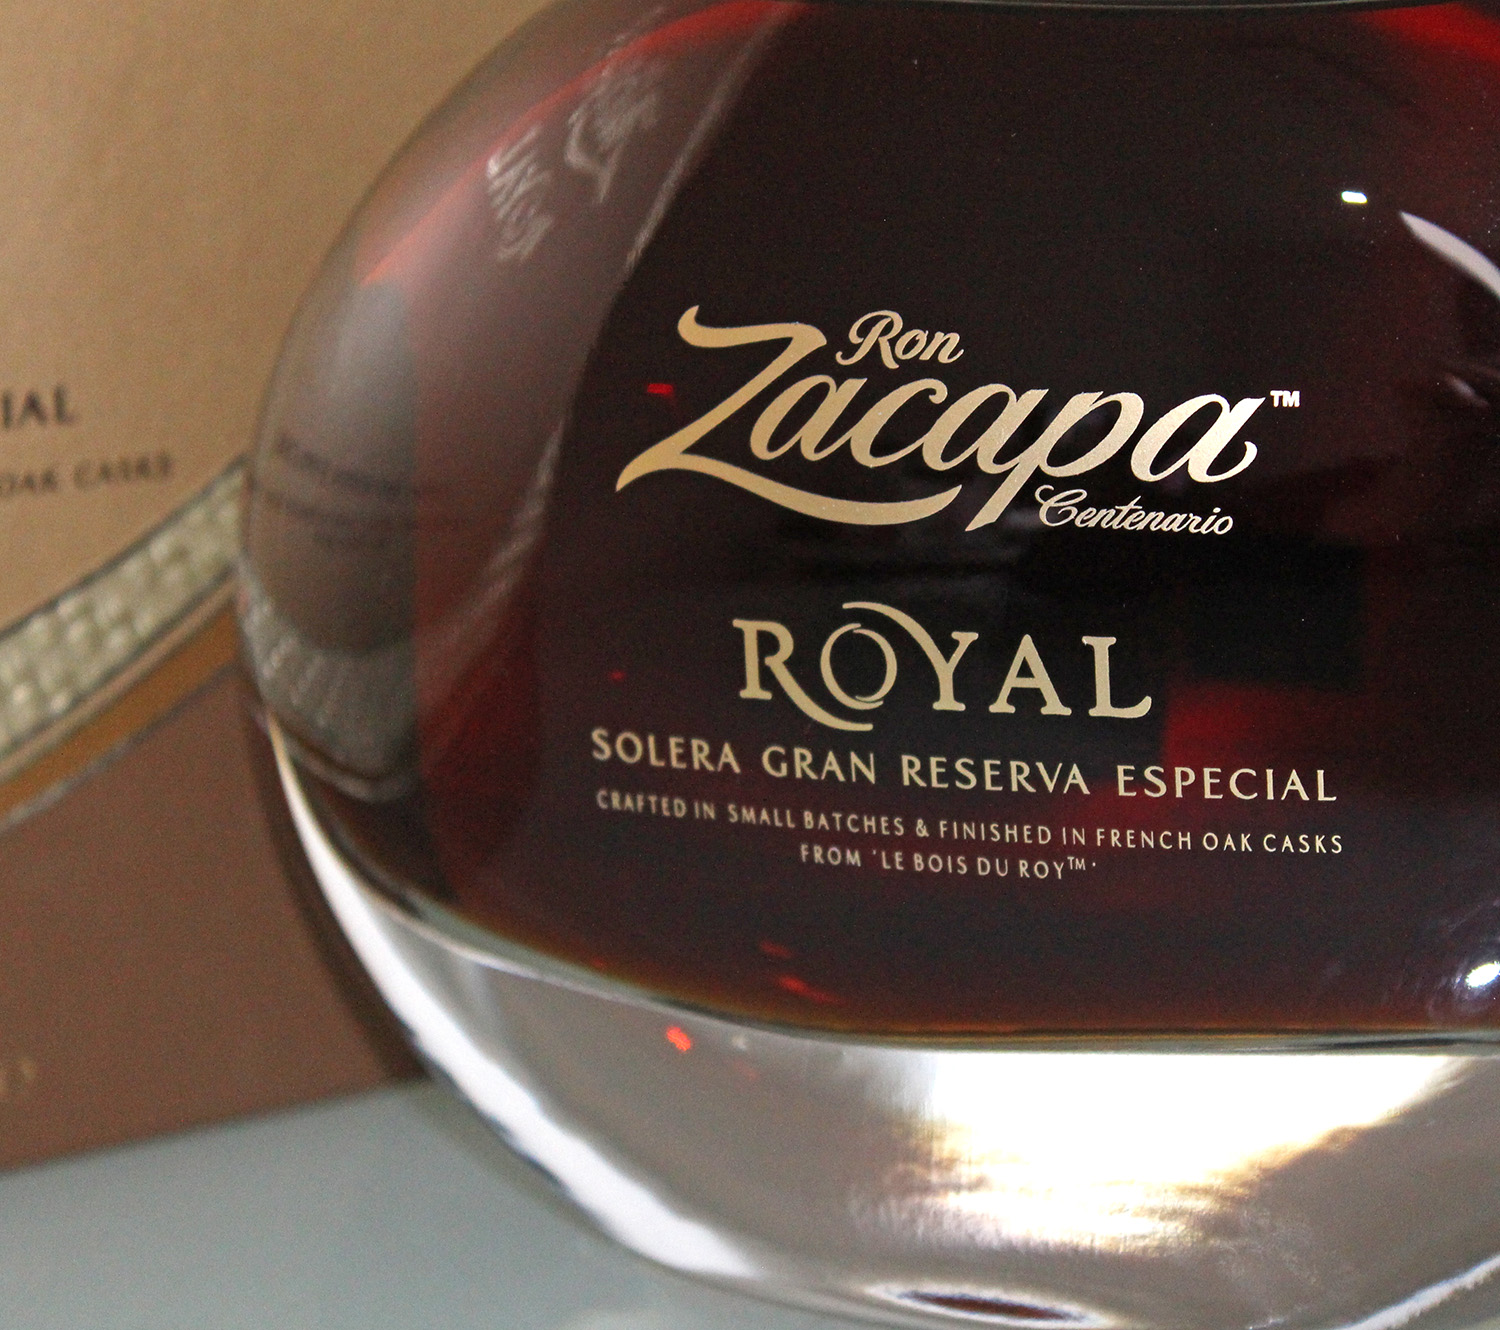 Ron Zacapa Royal Solera Gran Reserva Especial Label